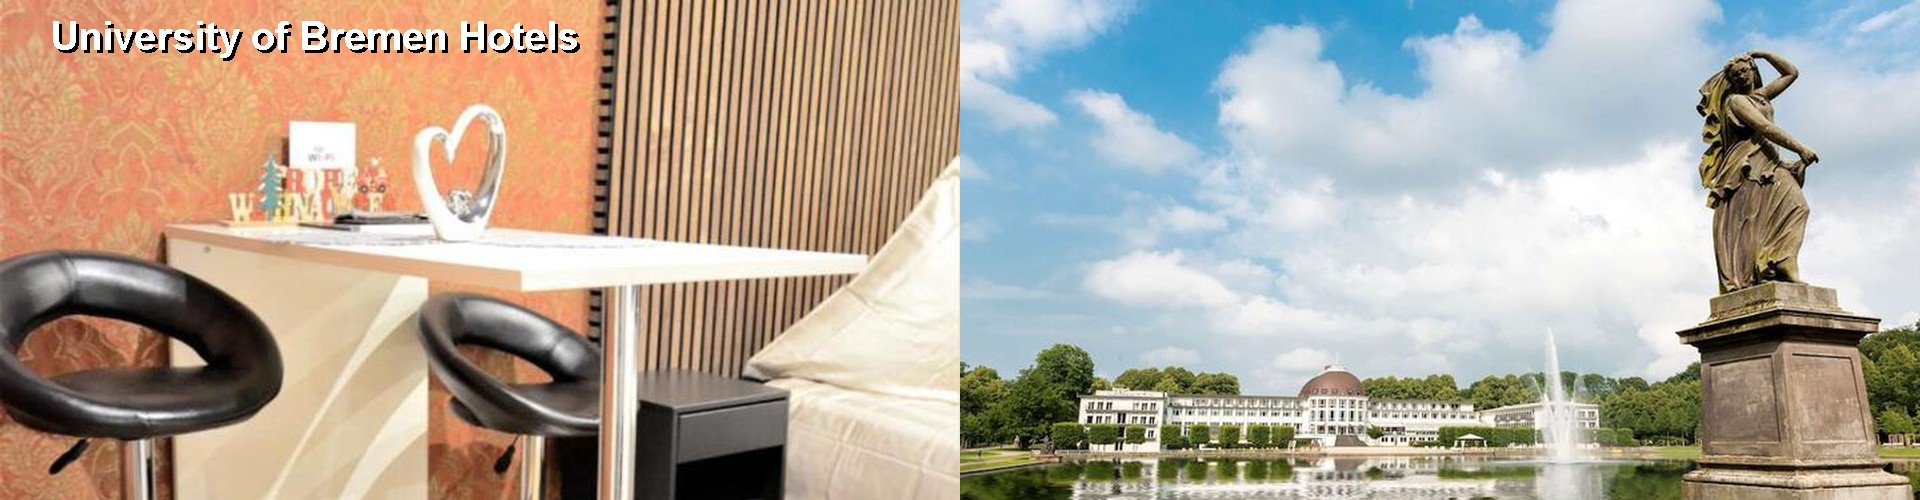 5 Best Hotels near University of Bremen